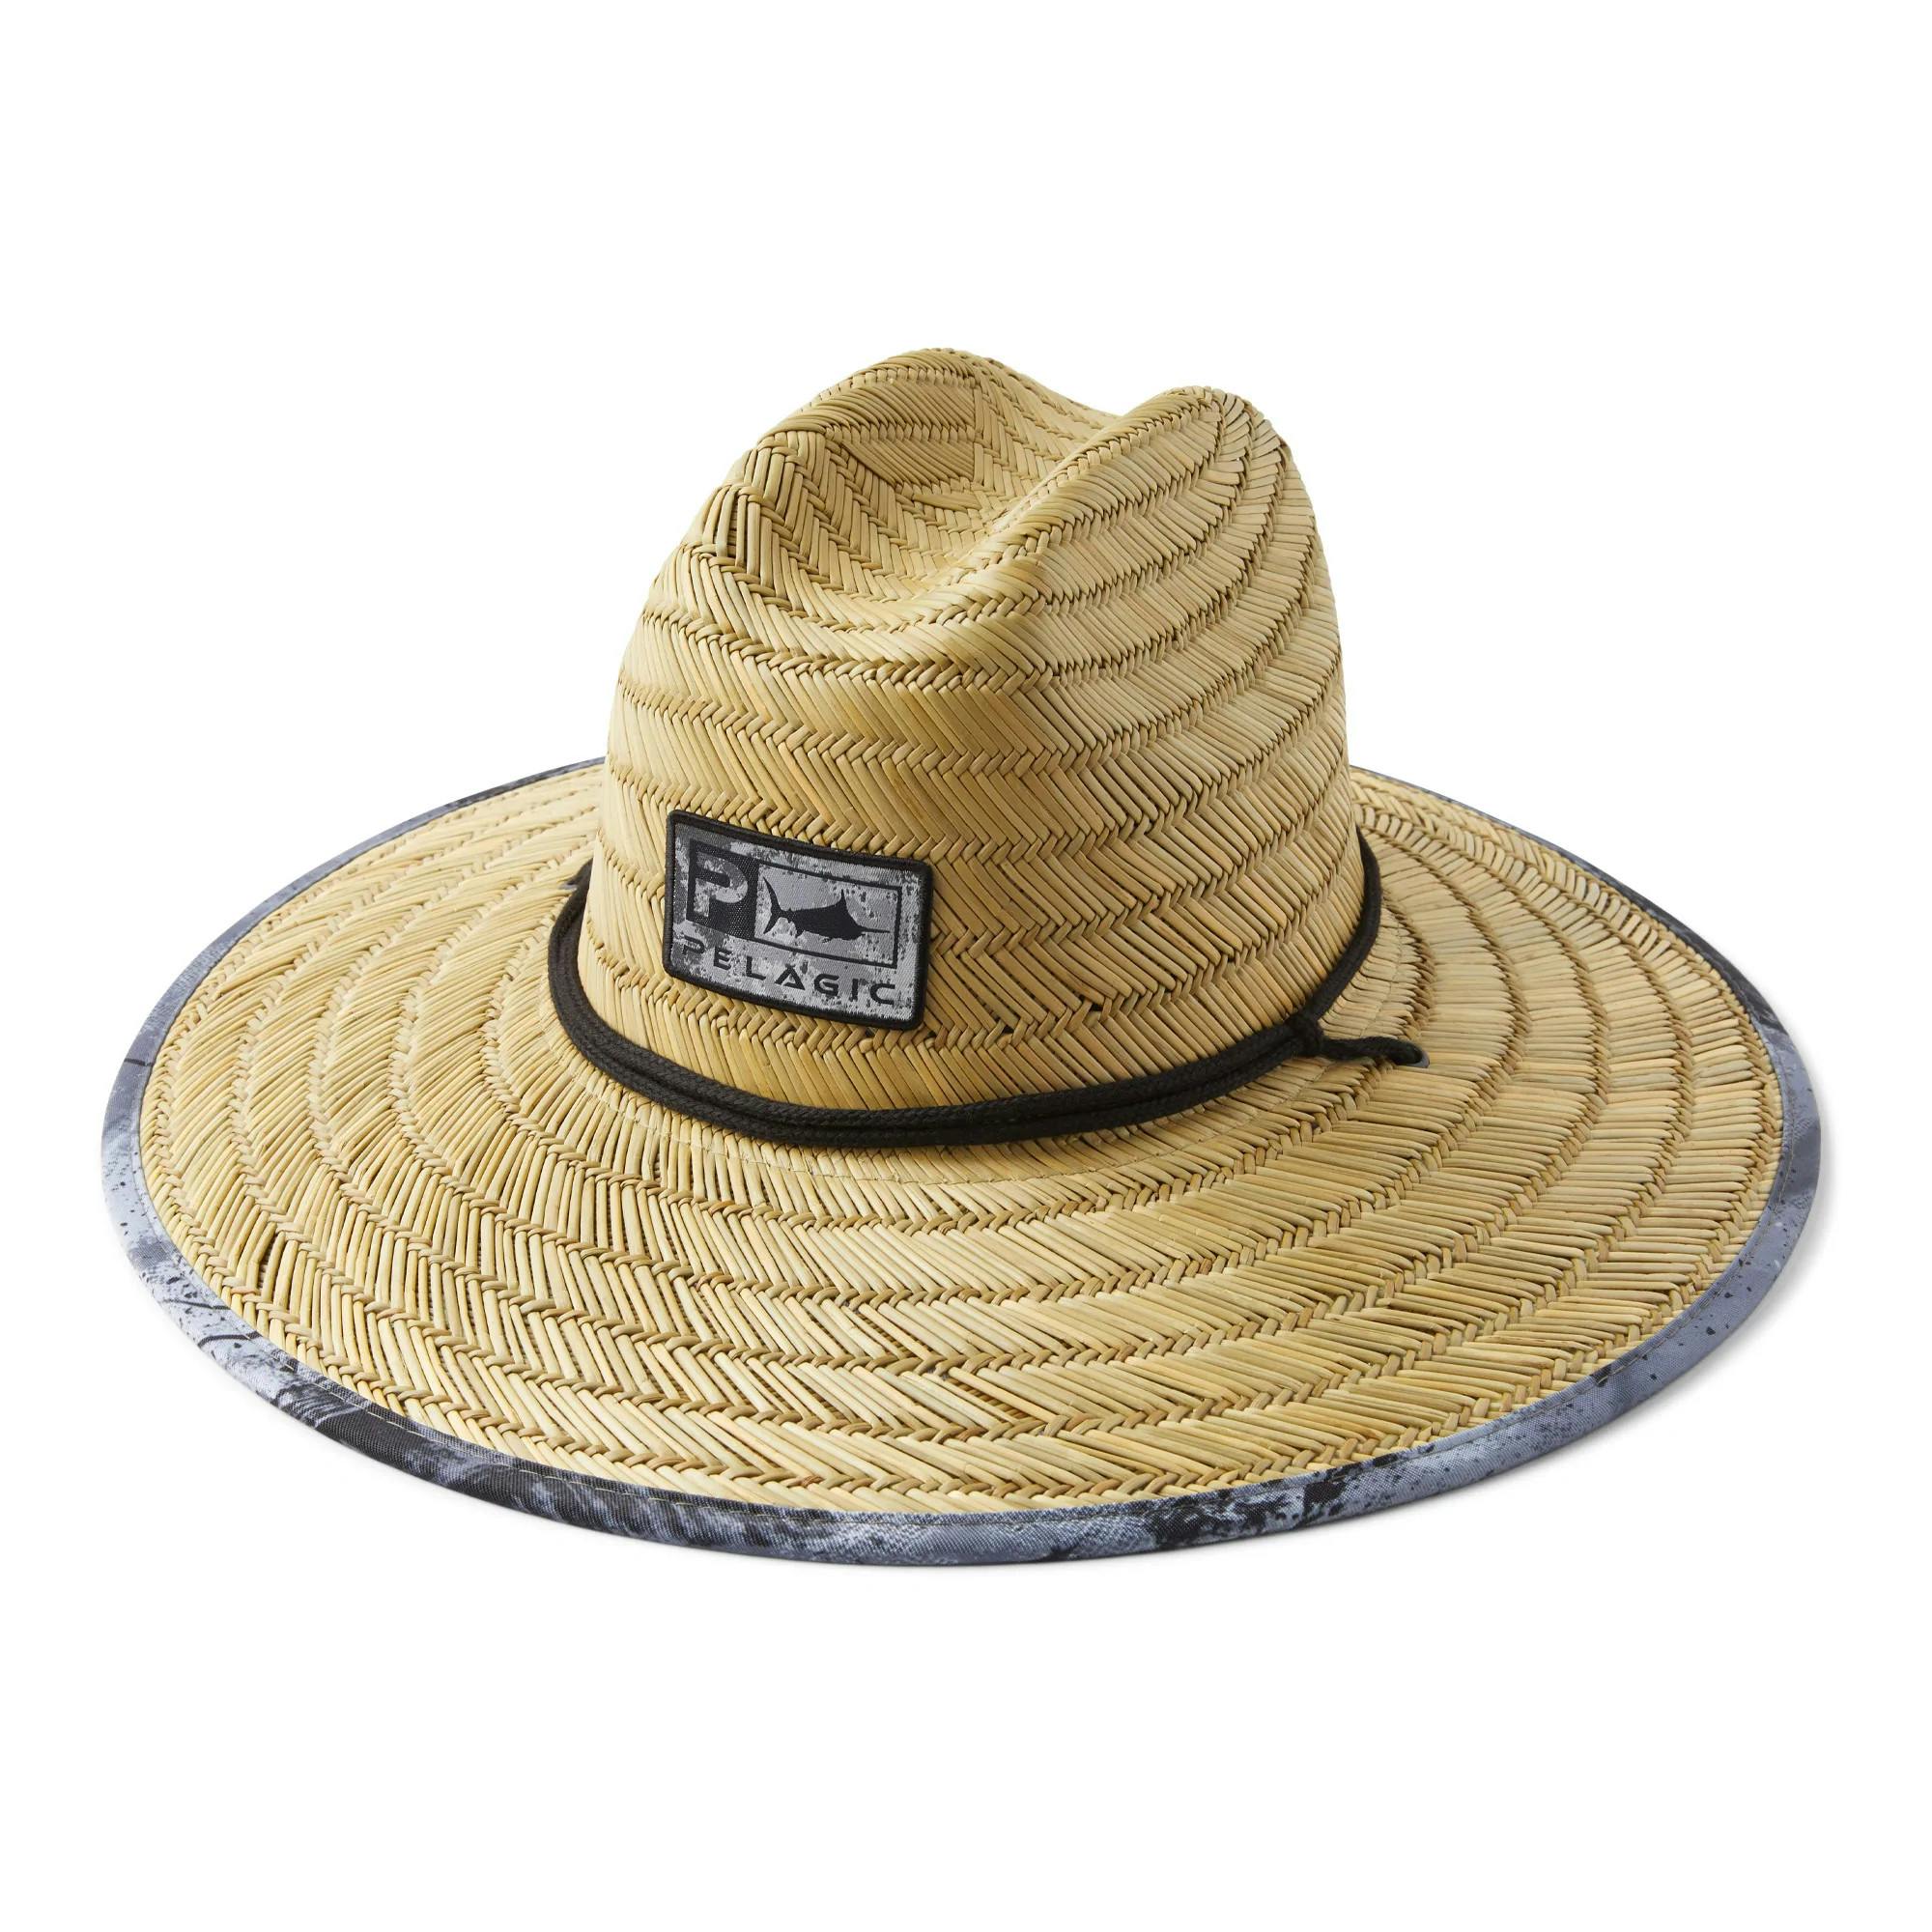 Pelagic Baja Straw Sun Hat - Black